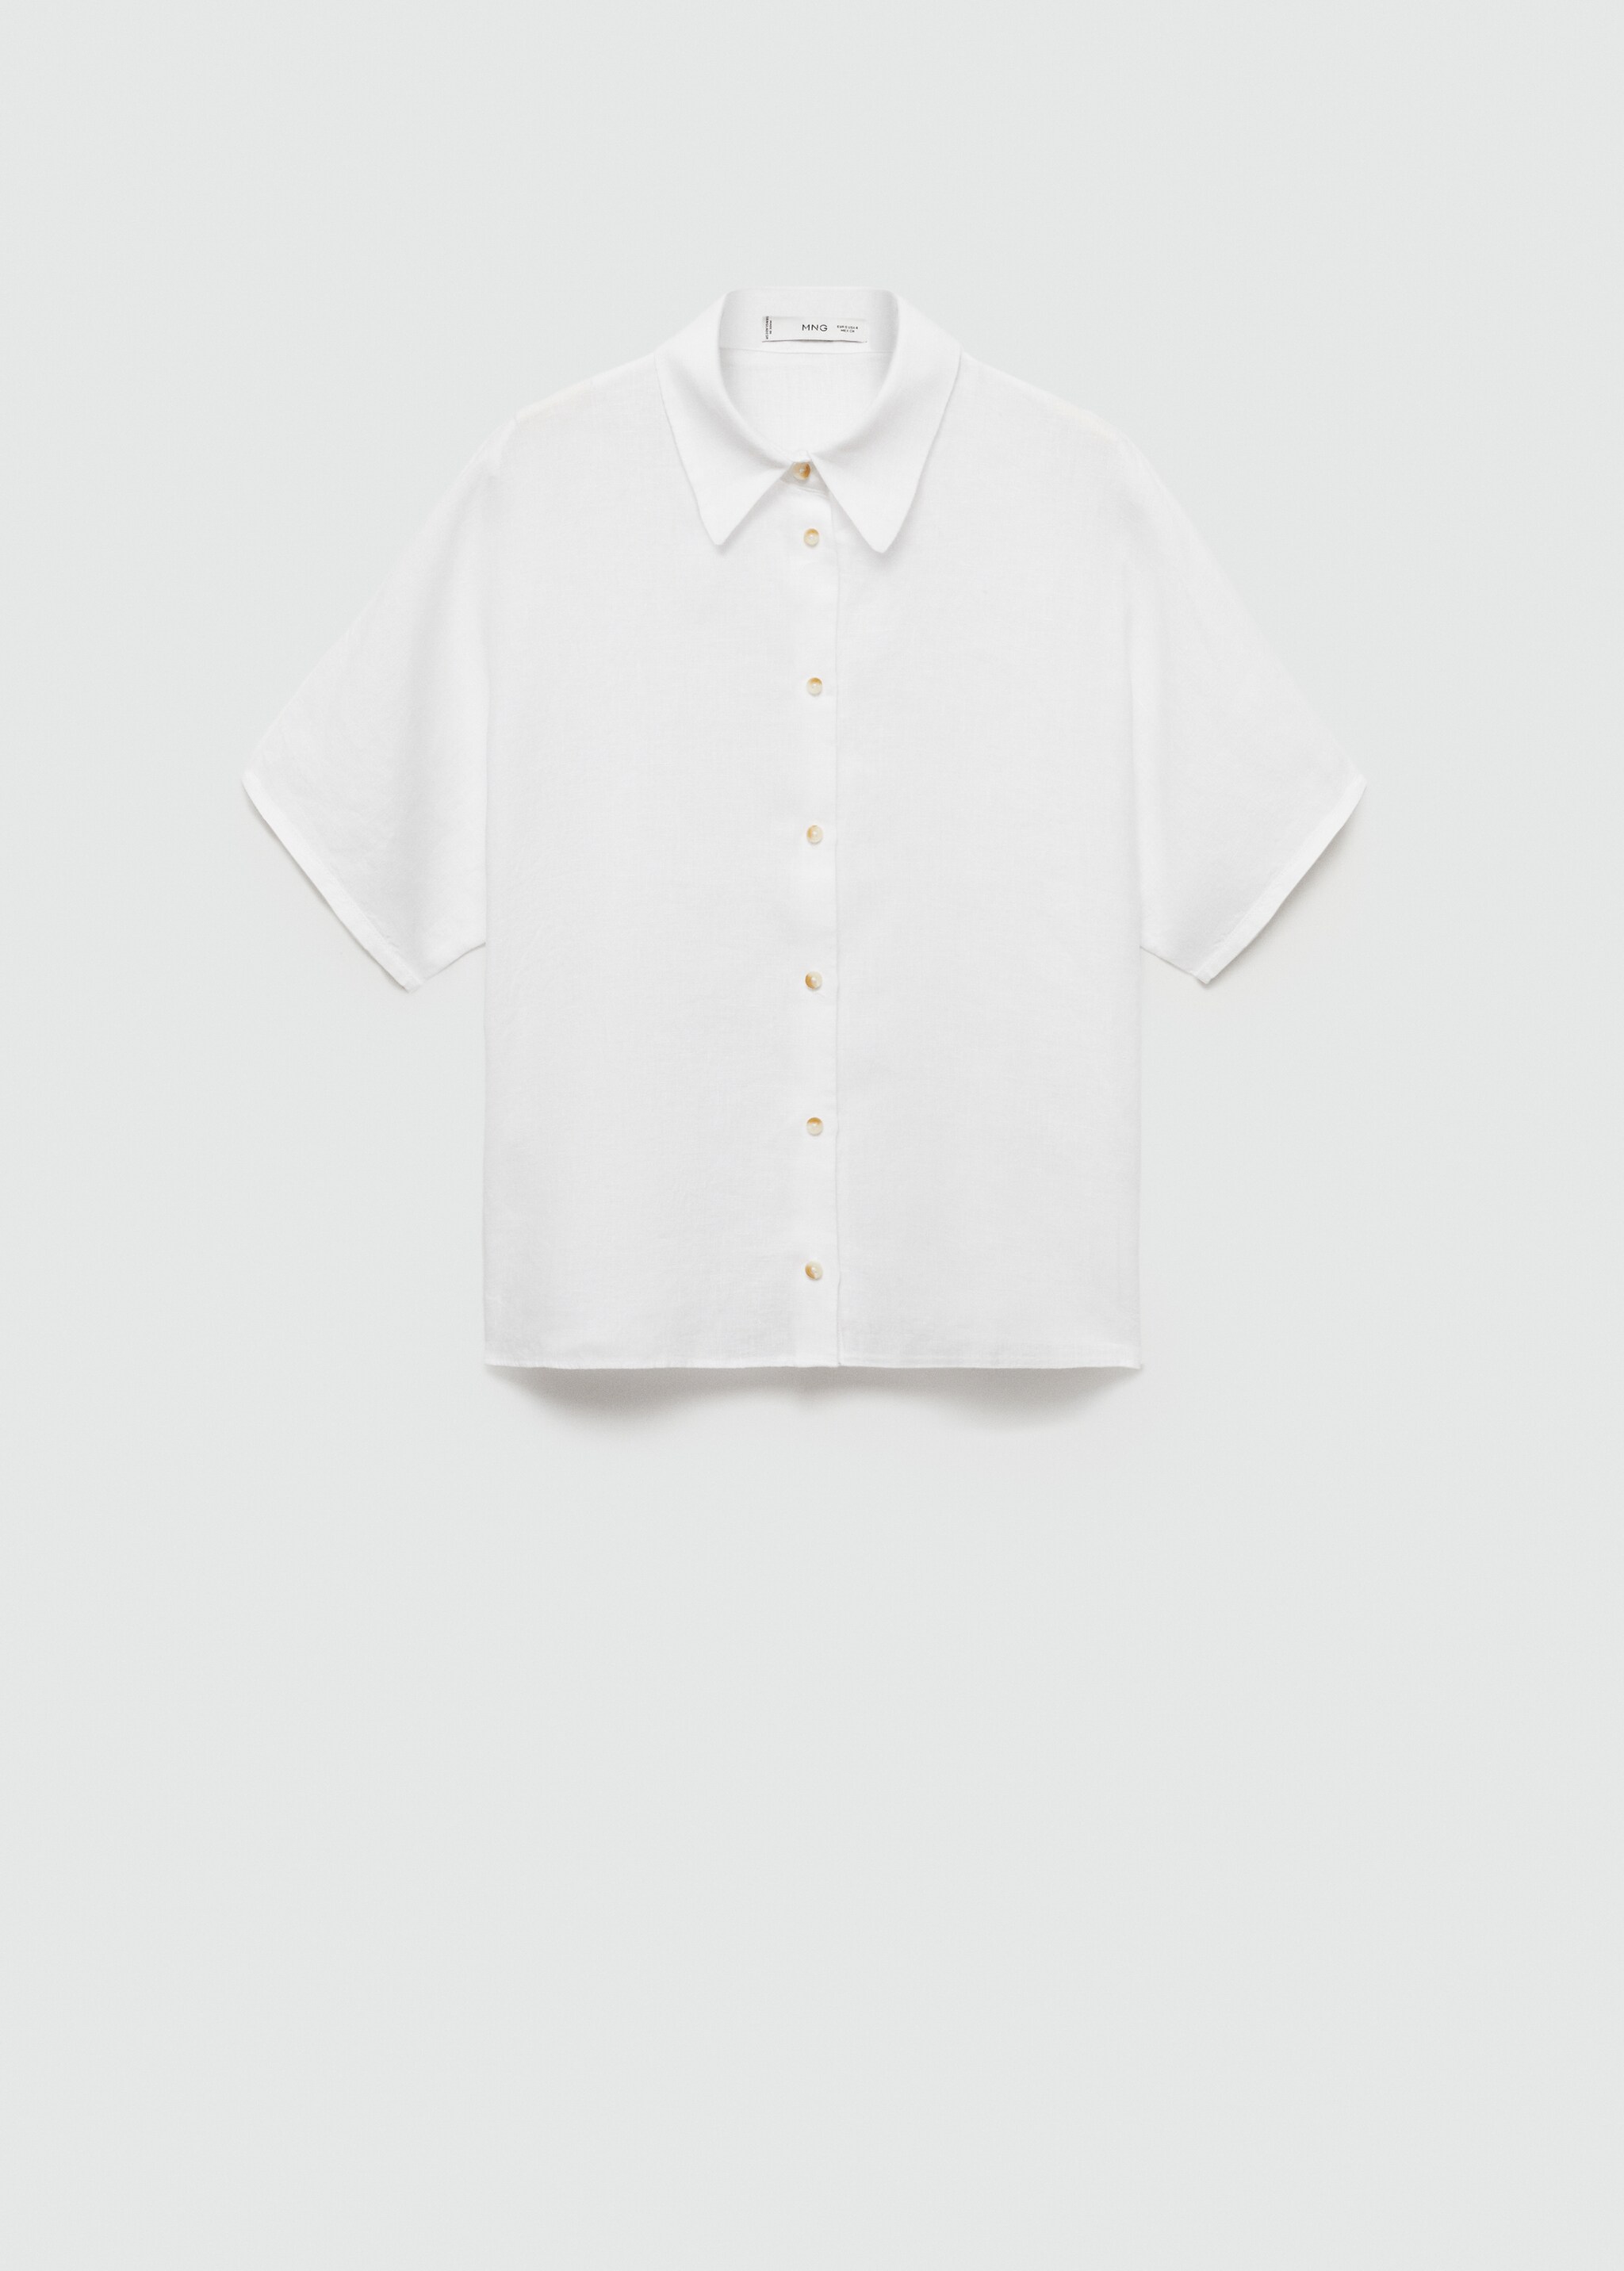 Camisa 100% lino - Artículo sin modelo